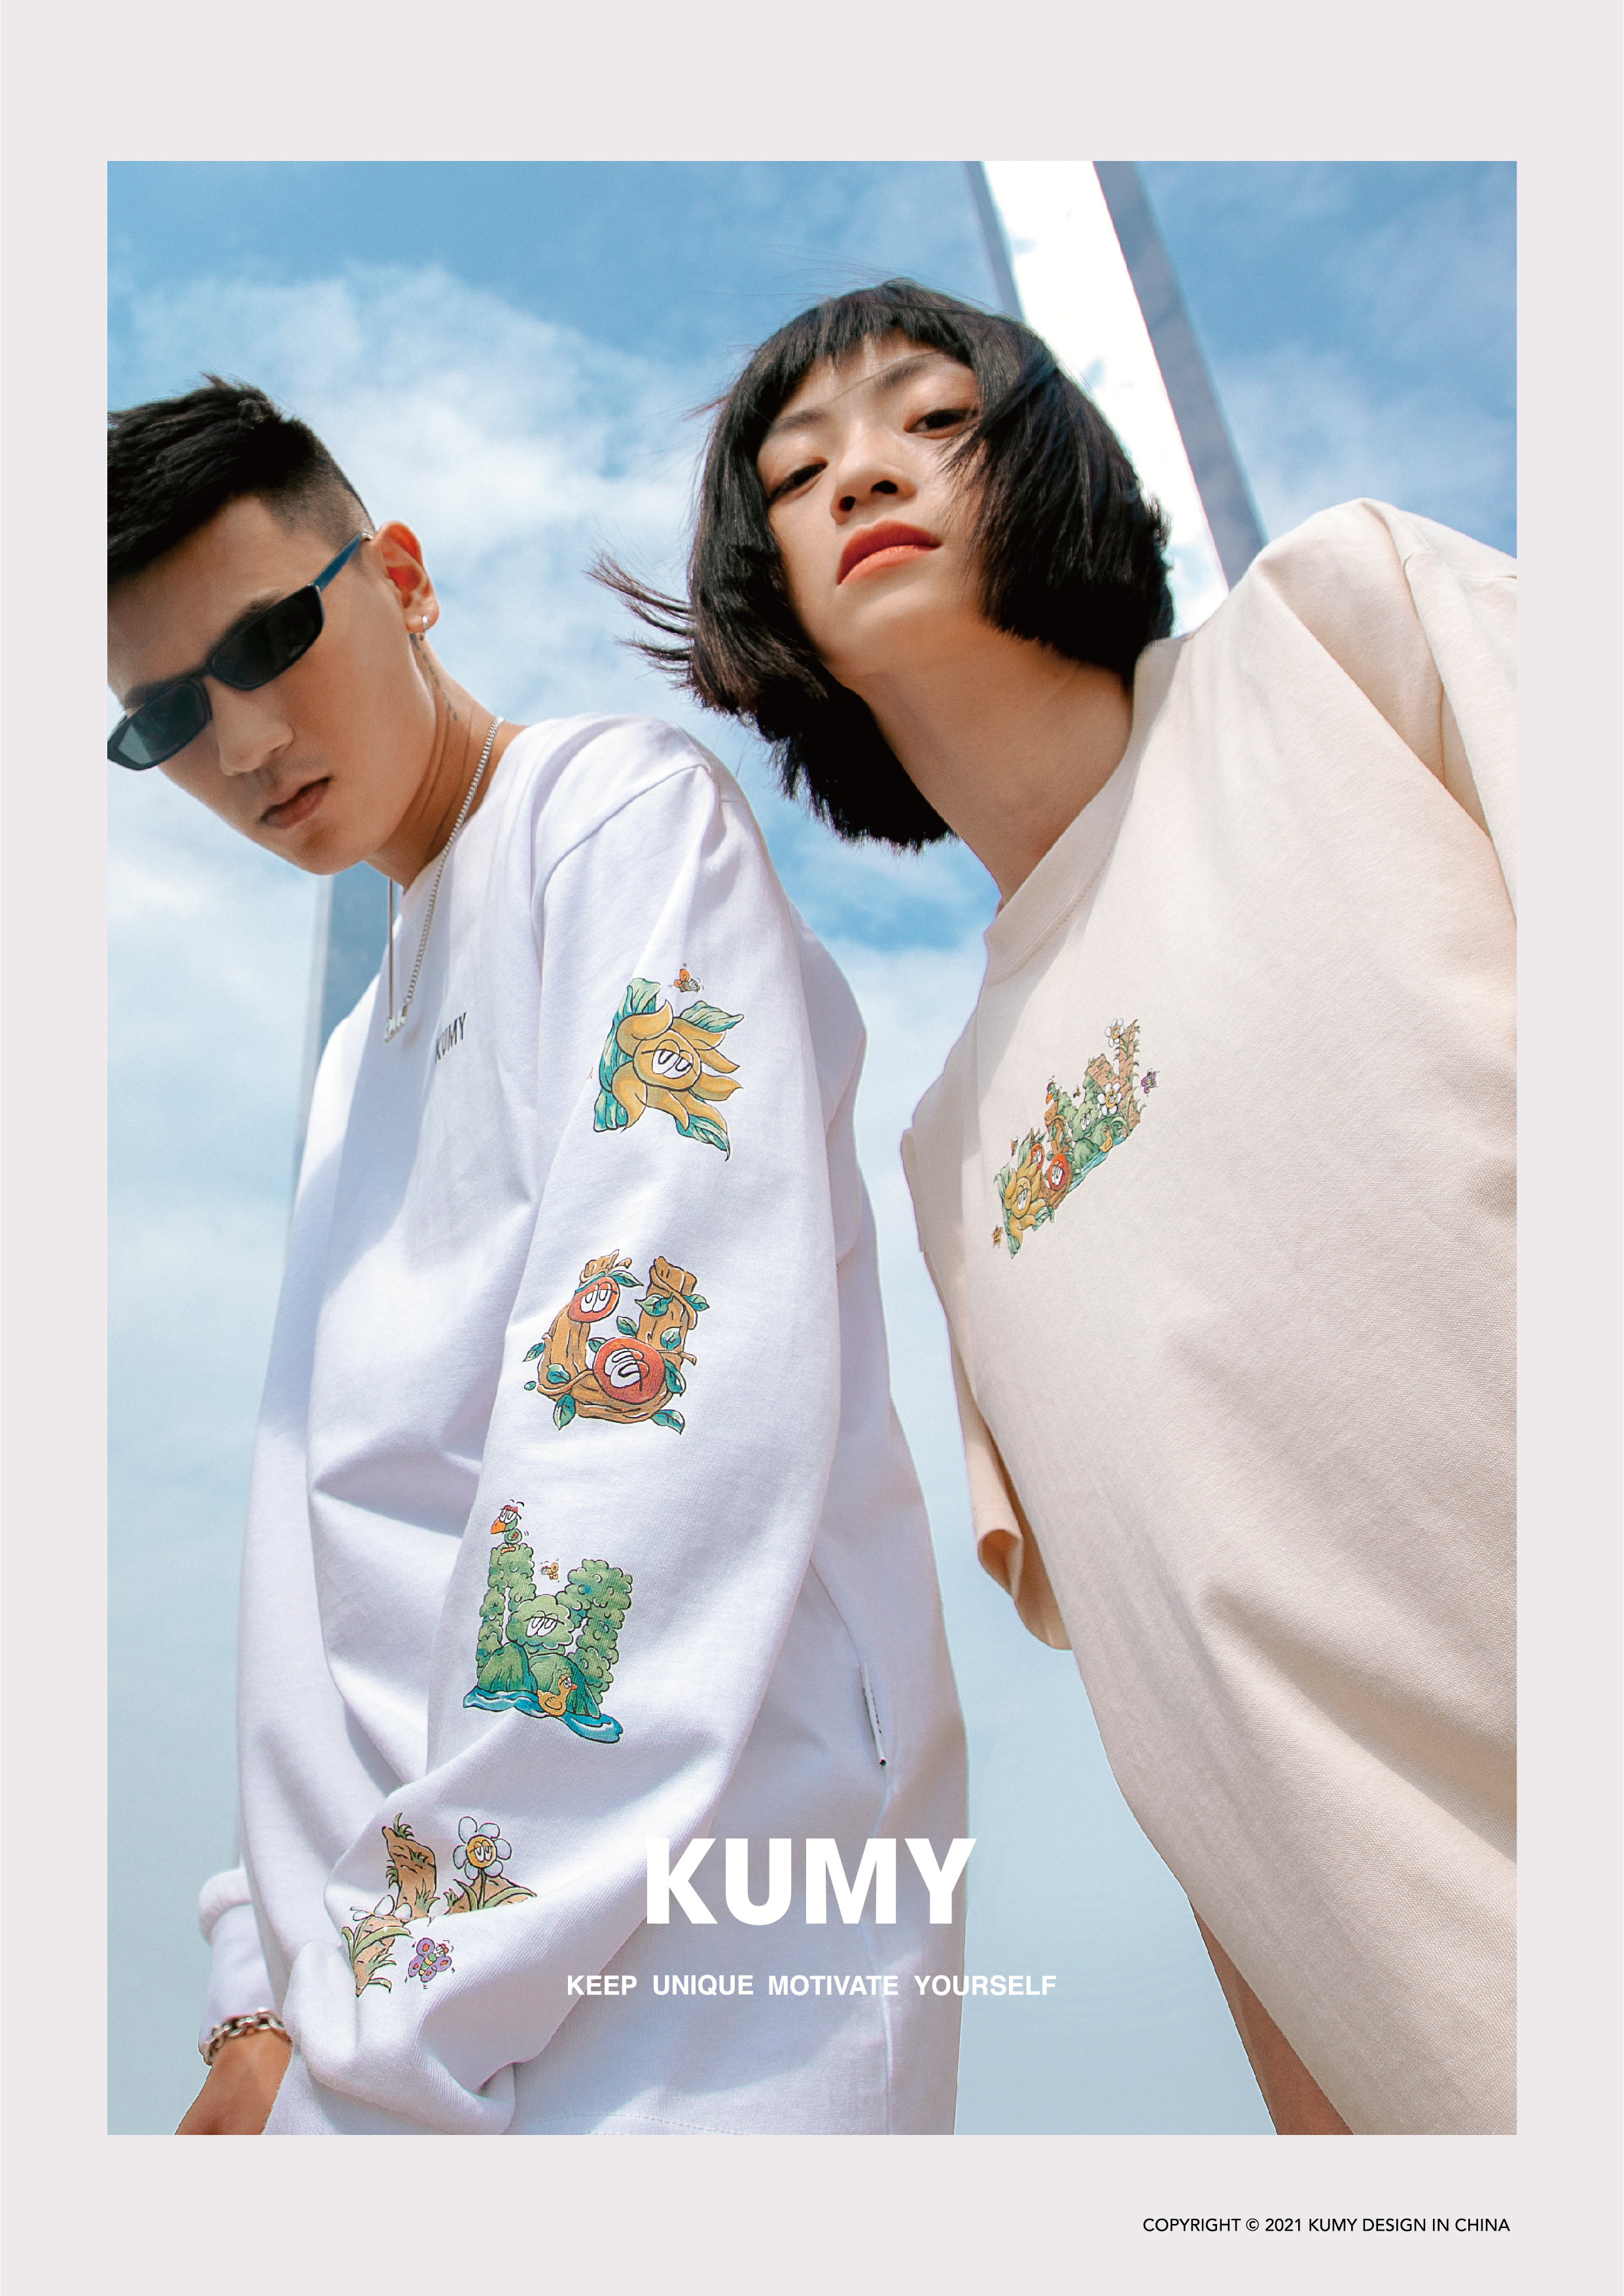 全新独立原创品牌KUMY于7月10日正式上线